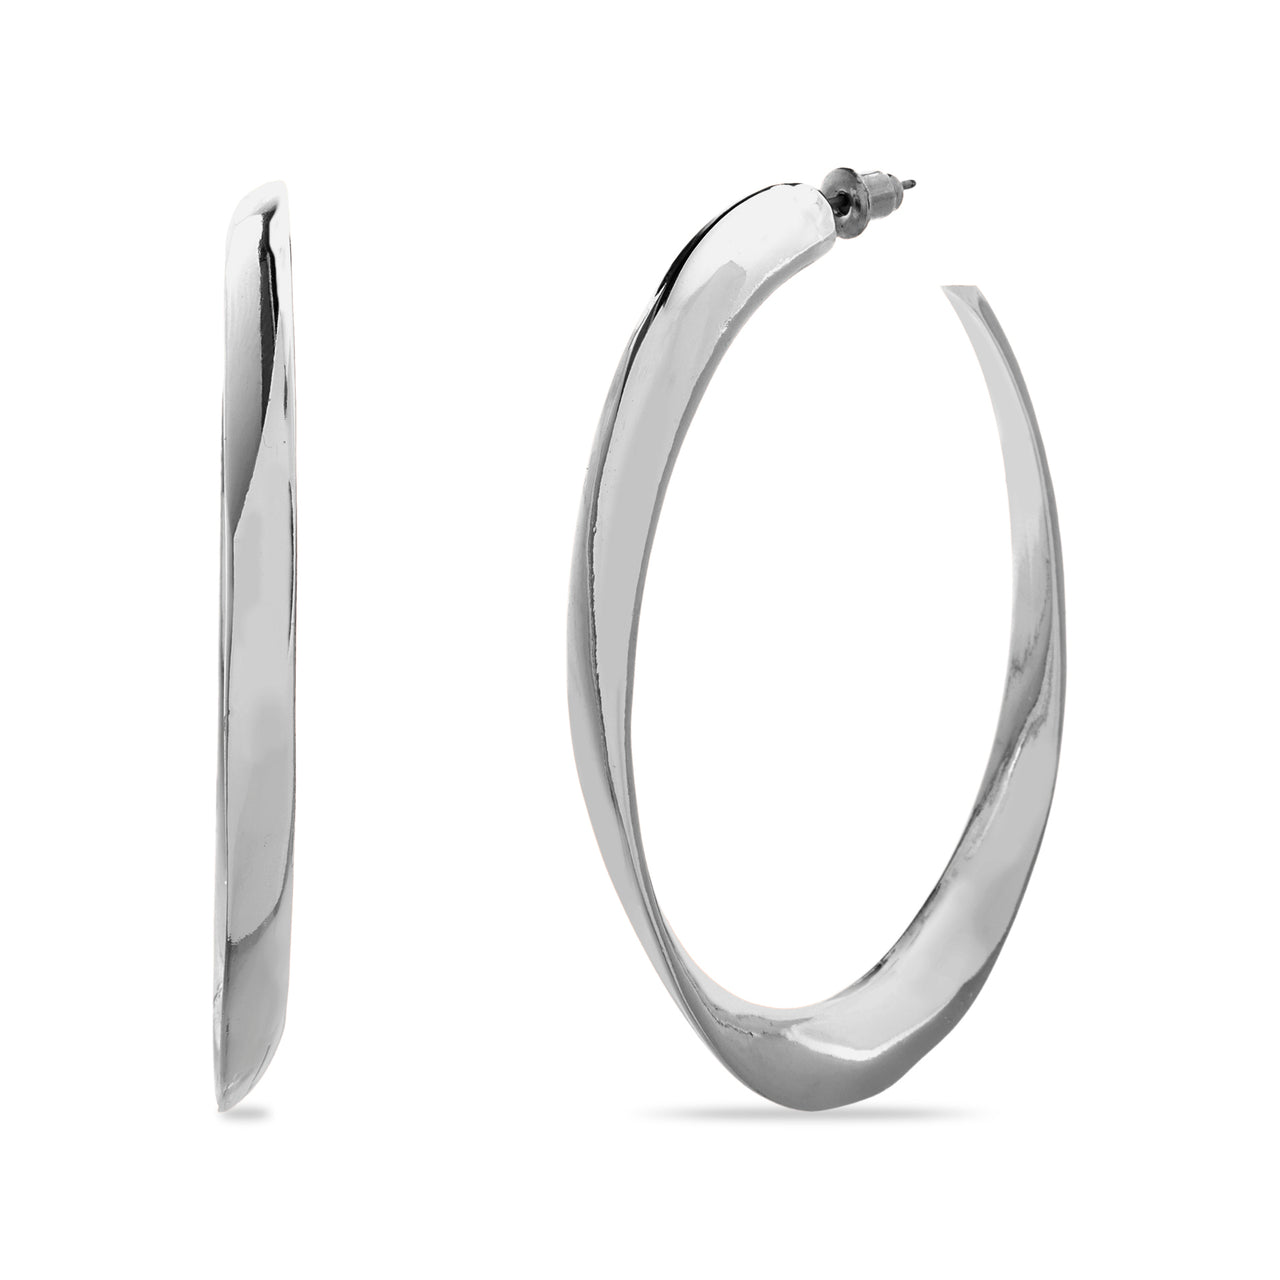 Steve Madden Silver-Tone Twisted Oval Hoop Earrings for Women